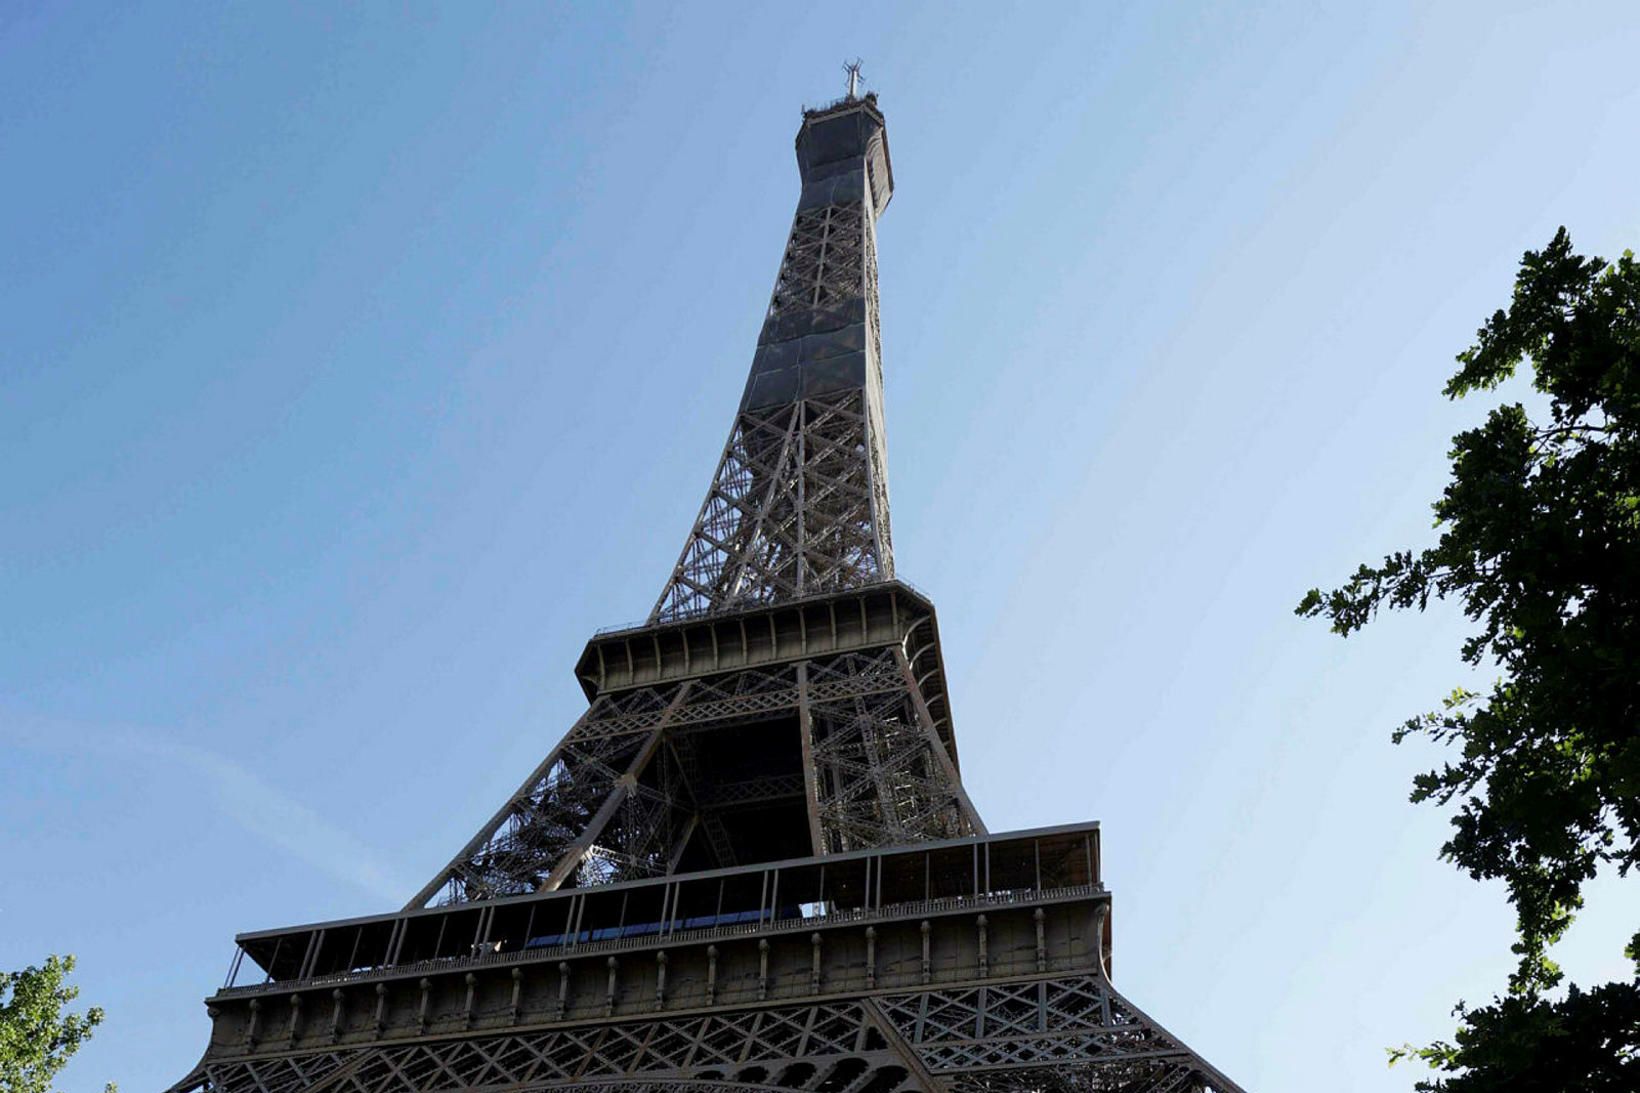 Eiffel turninn opnaði í dag.